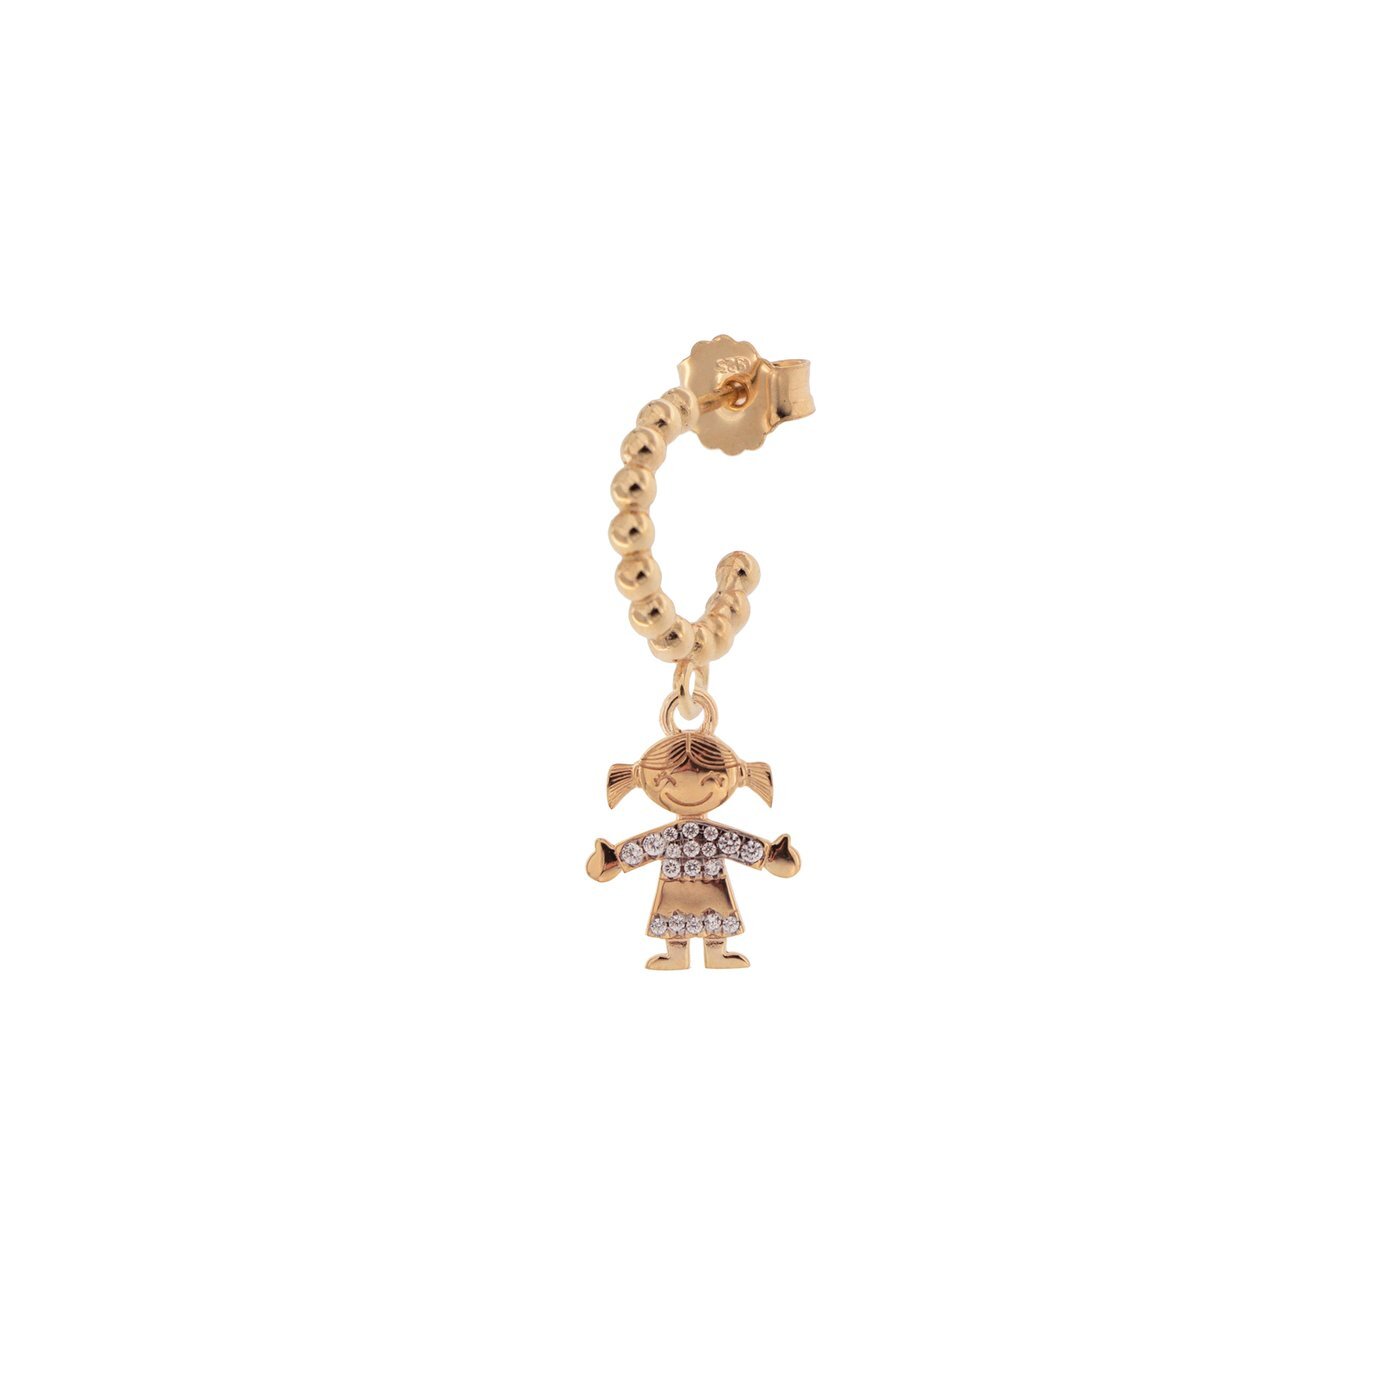 Rue Des Mille mono orecchino a cerchietto in argento 925 placcato in oro rosa 18 kt con soggetto "bimba" e zirconi - Codice mono orecchino: ORZ-007 BIMBA